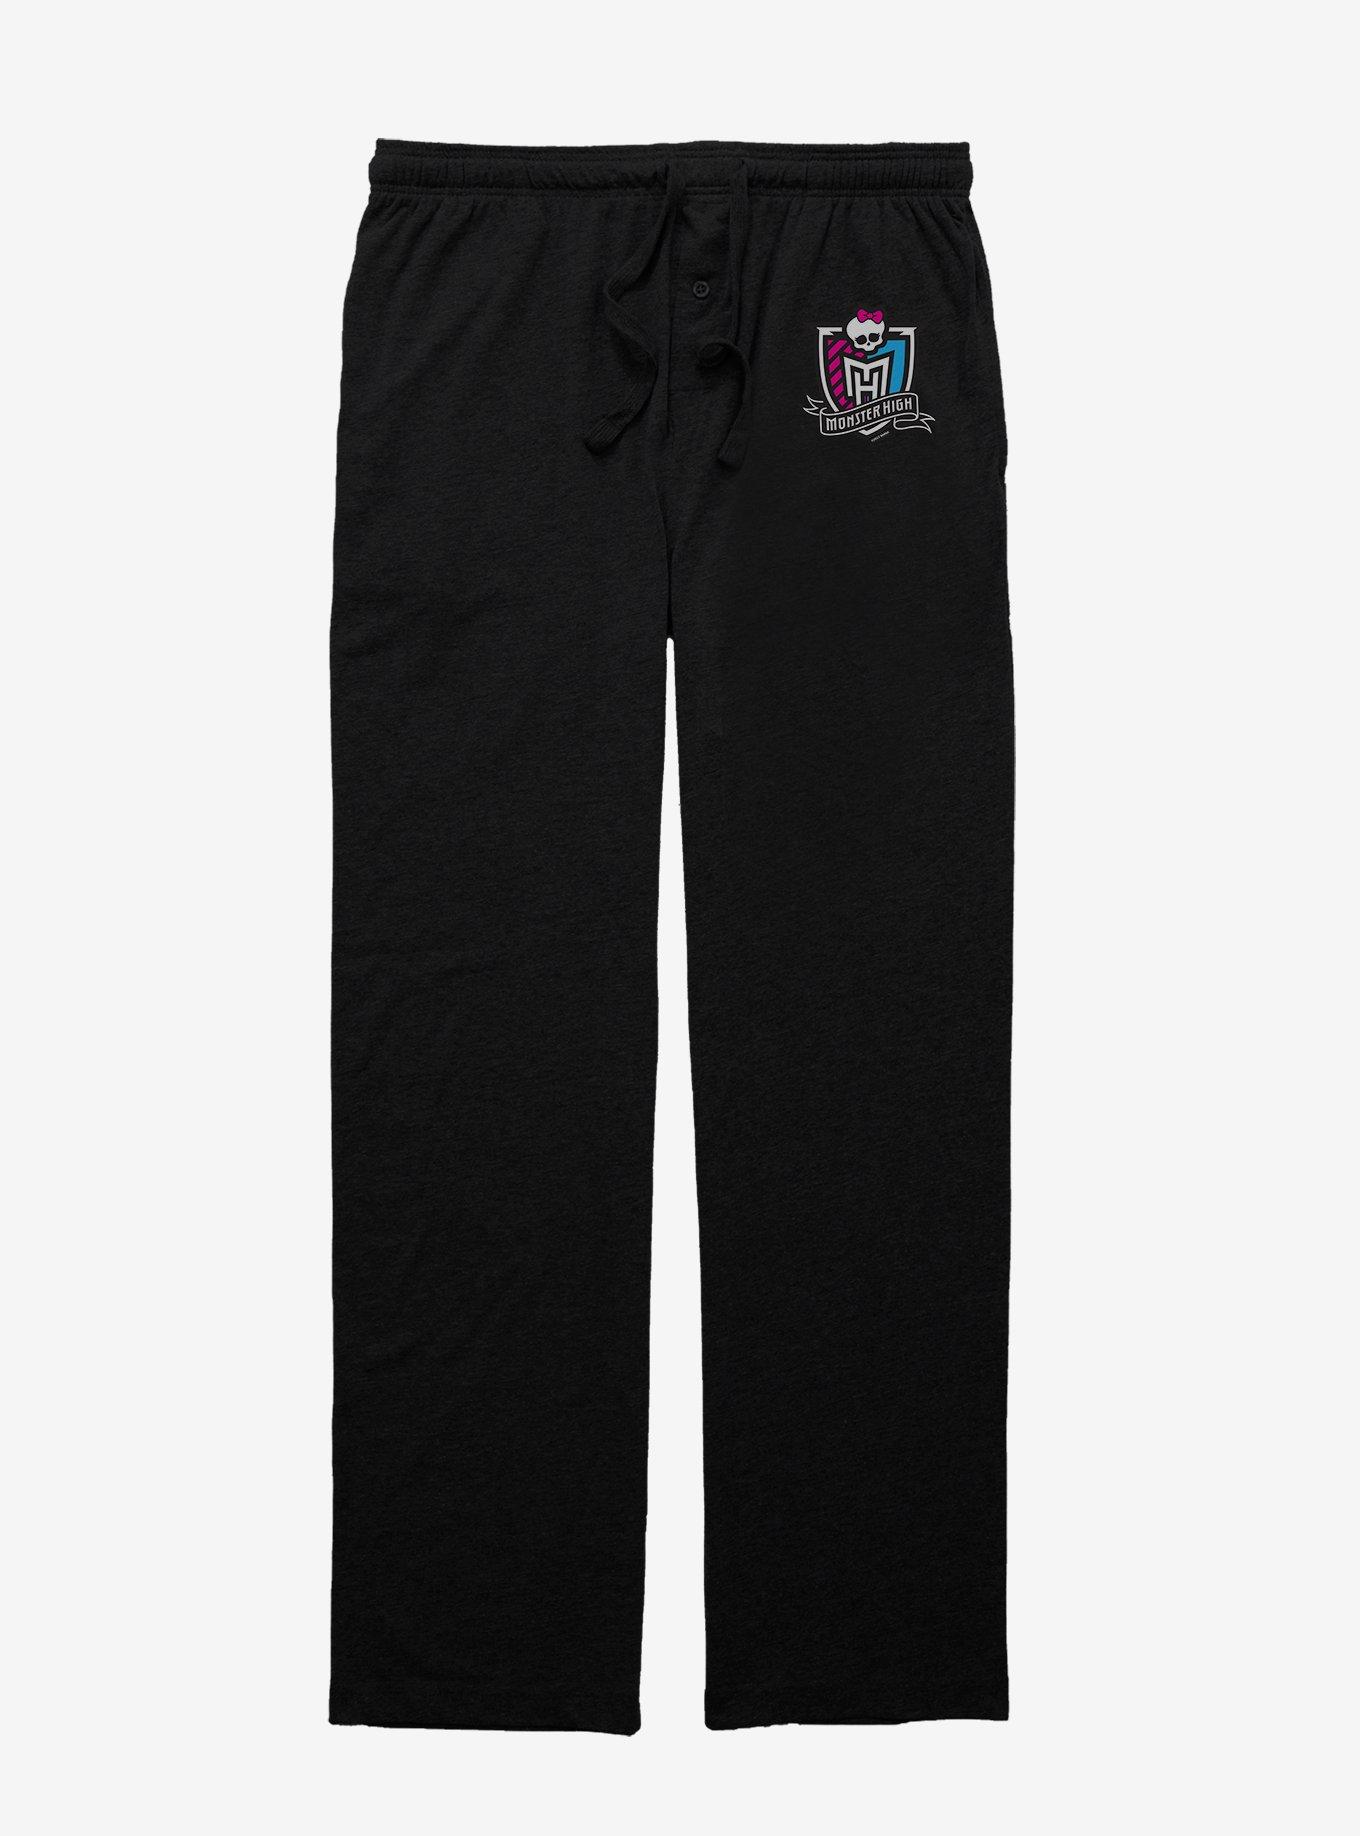 Monster High Shield Pajama Pants